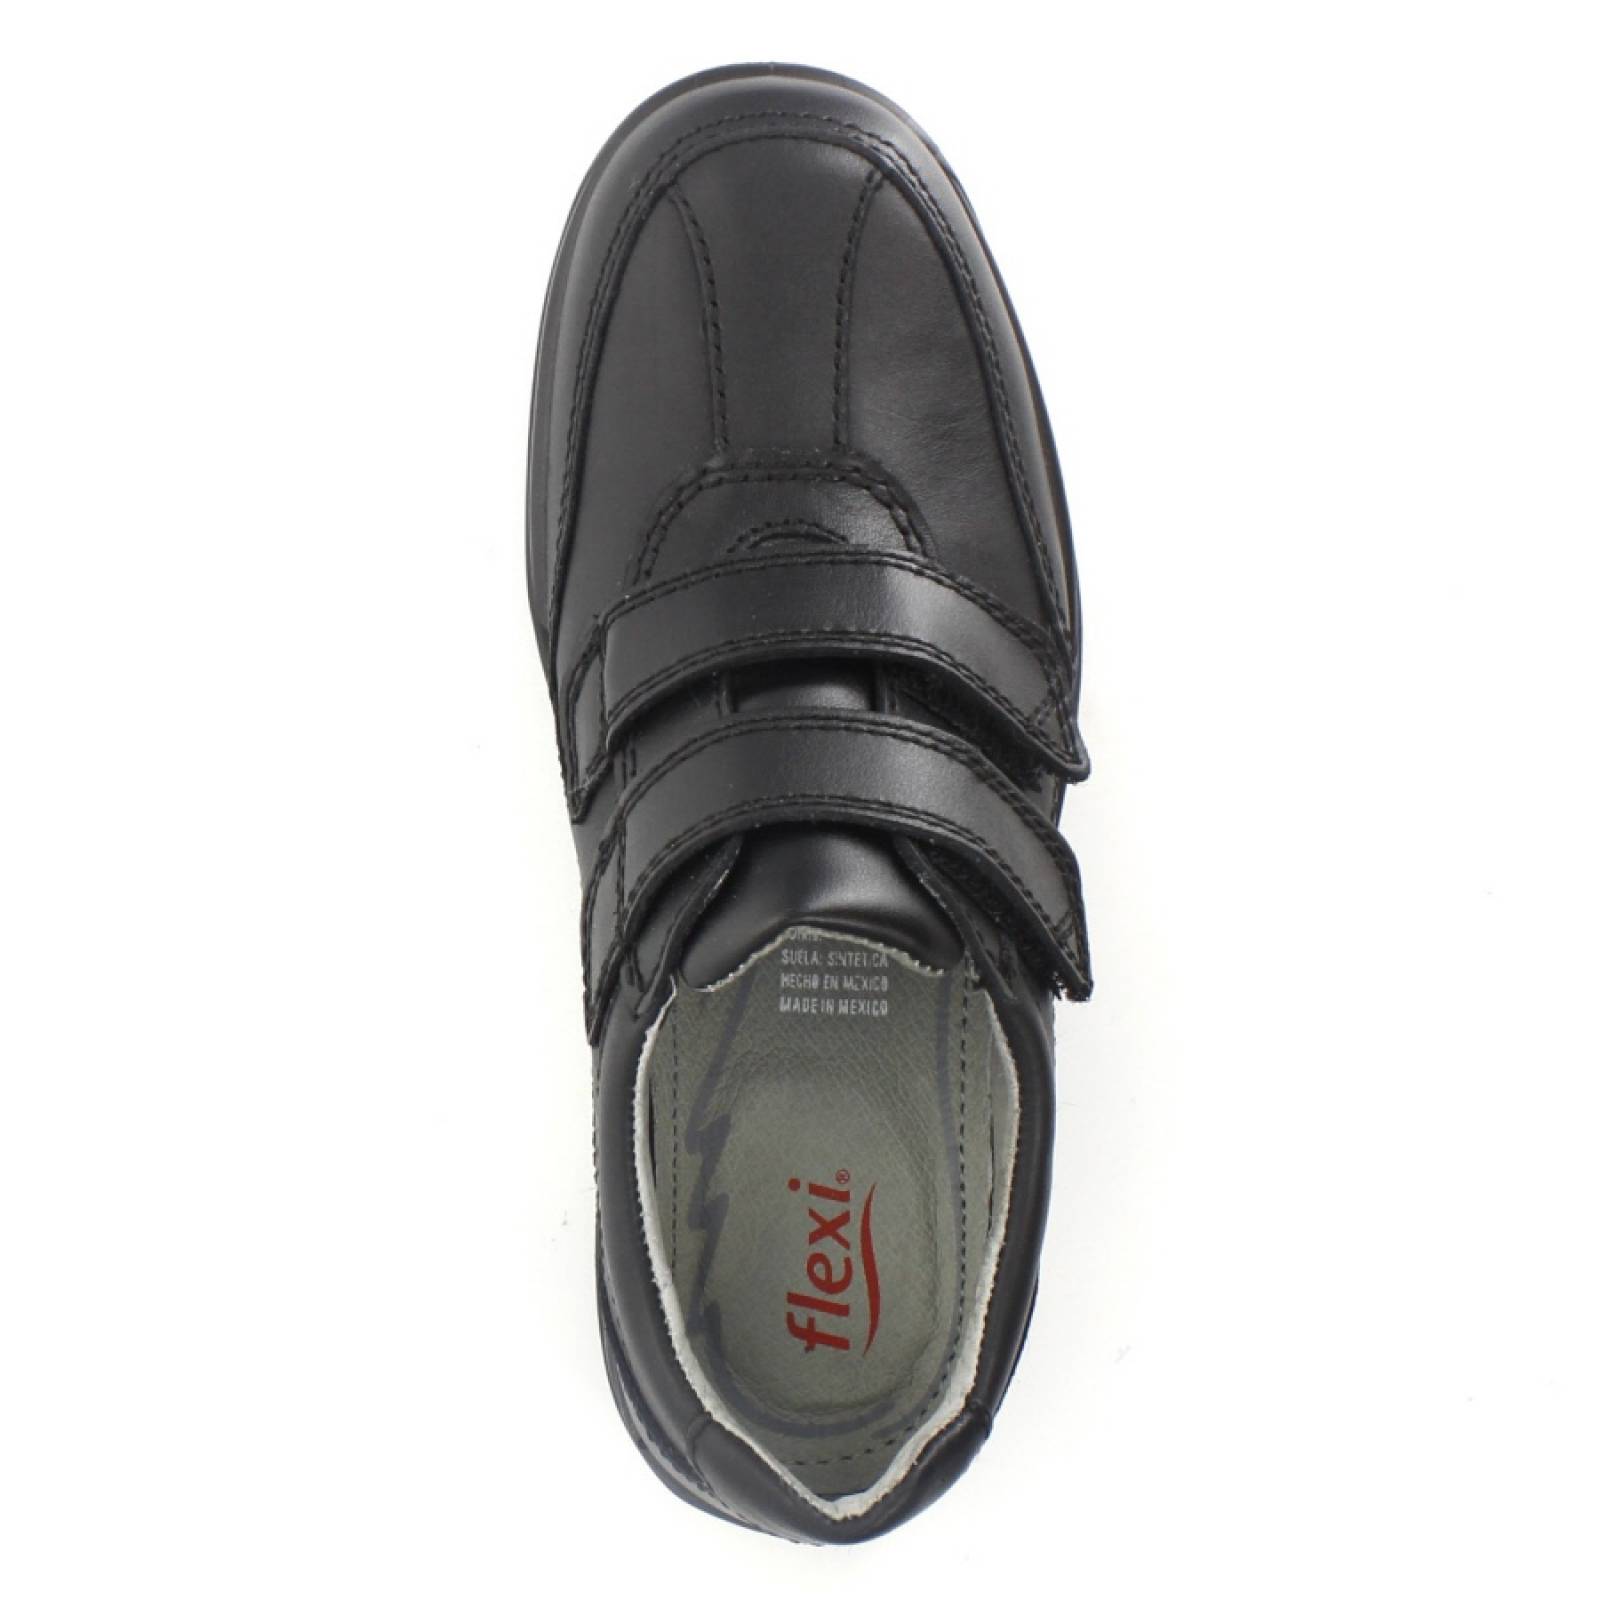 Zapato Marca Flexi Modelo 94203